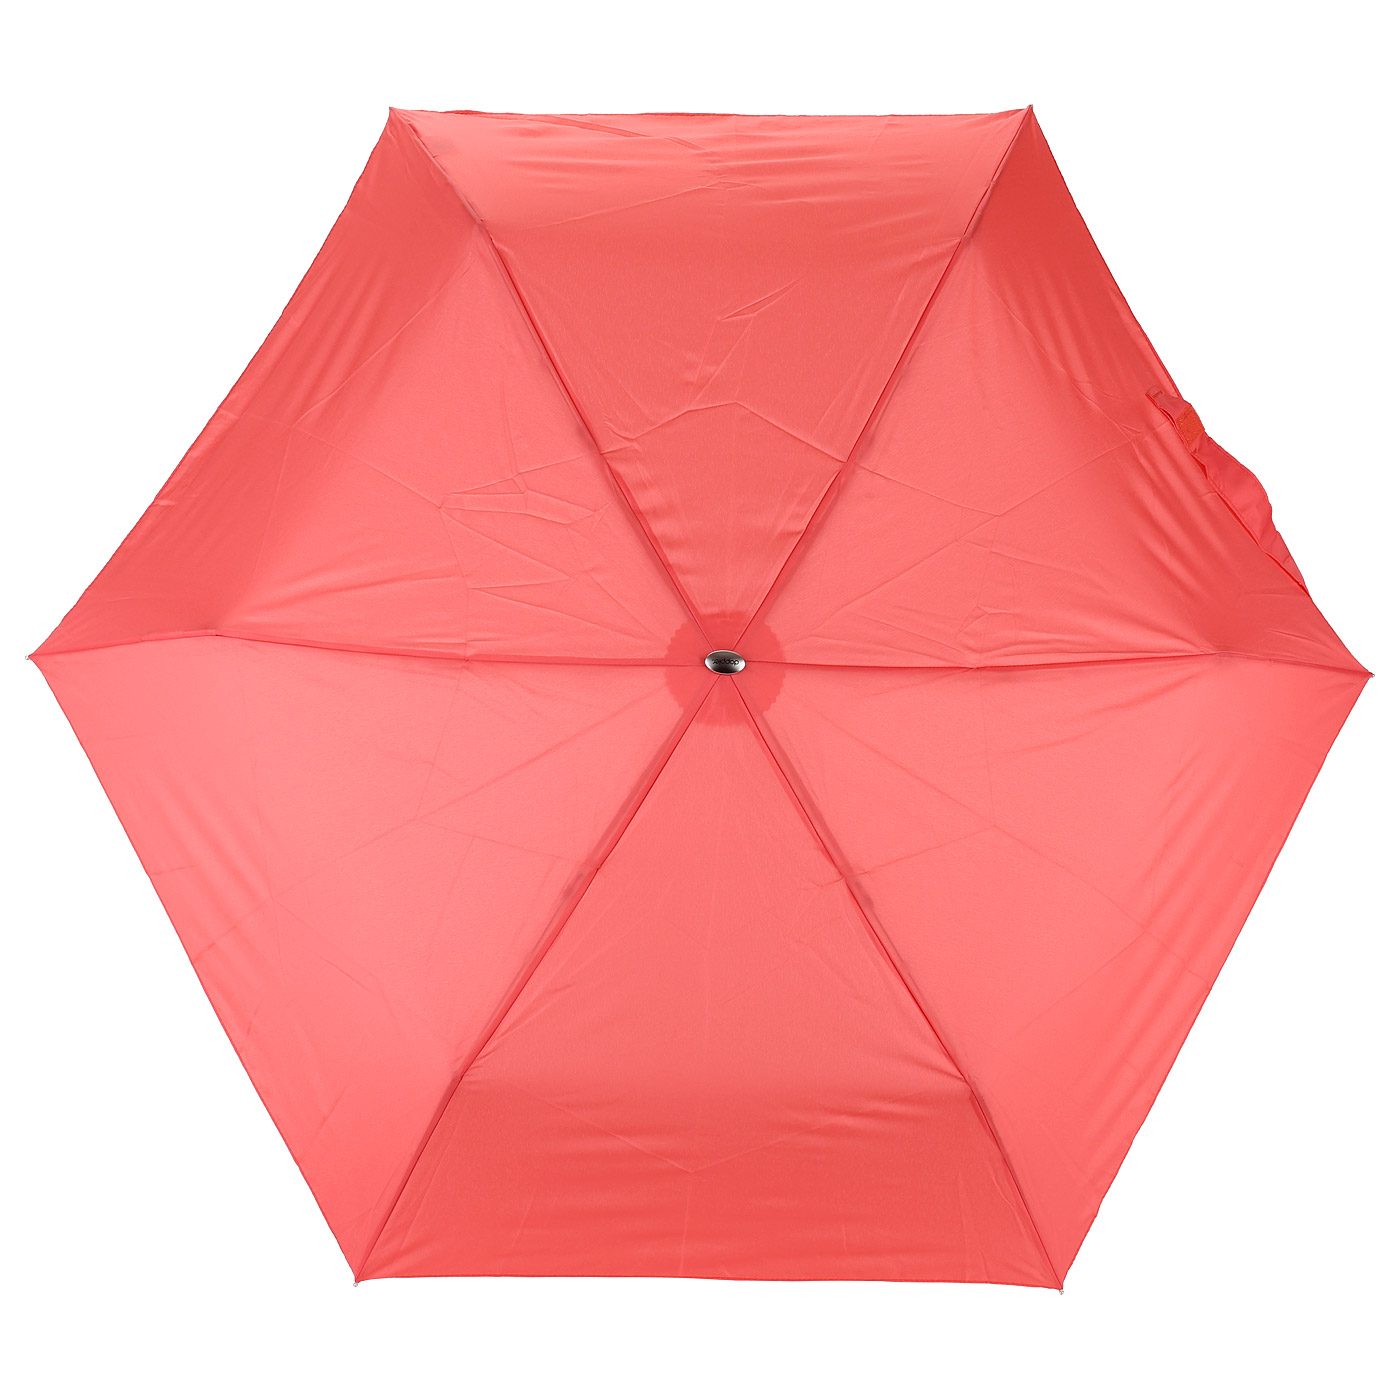 Красный женский зонт Doppler 